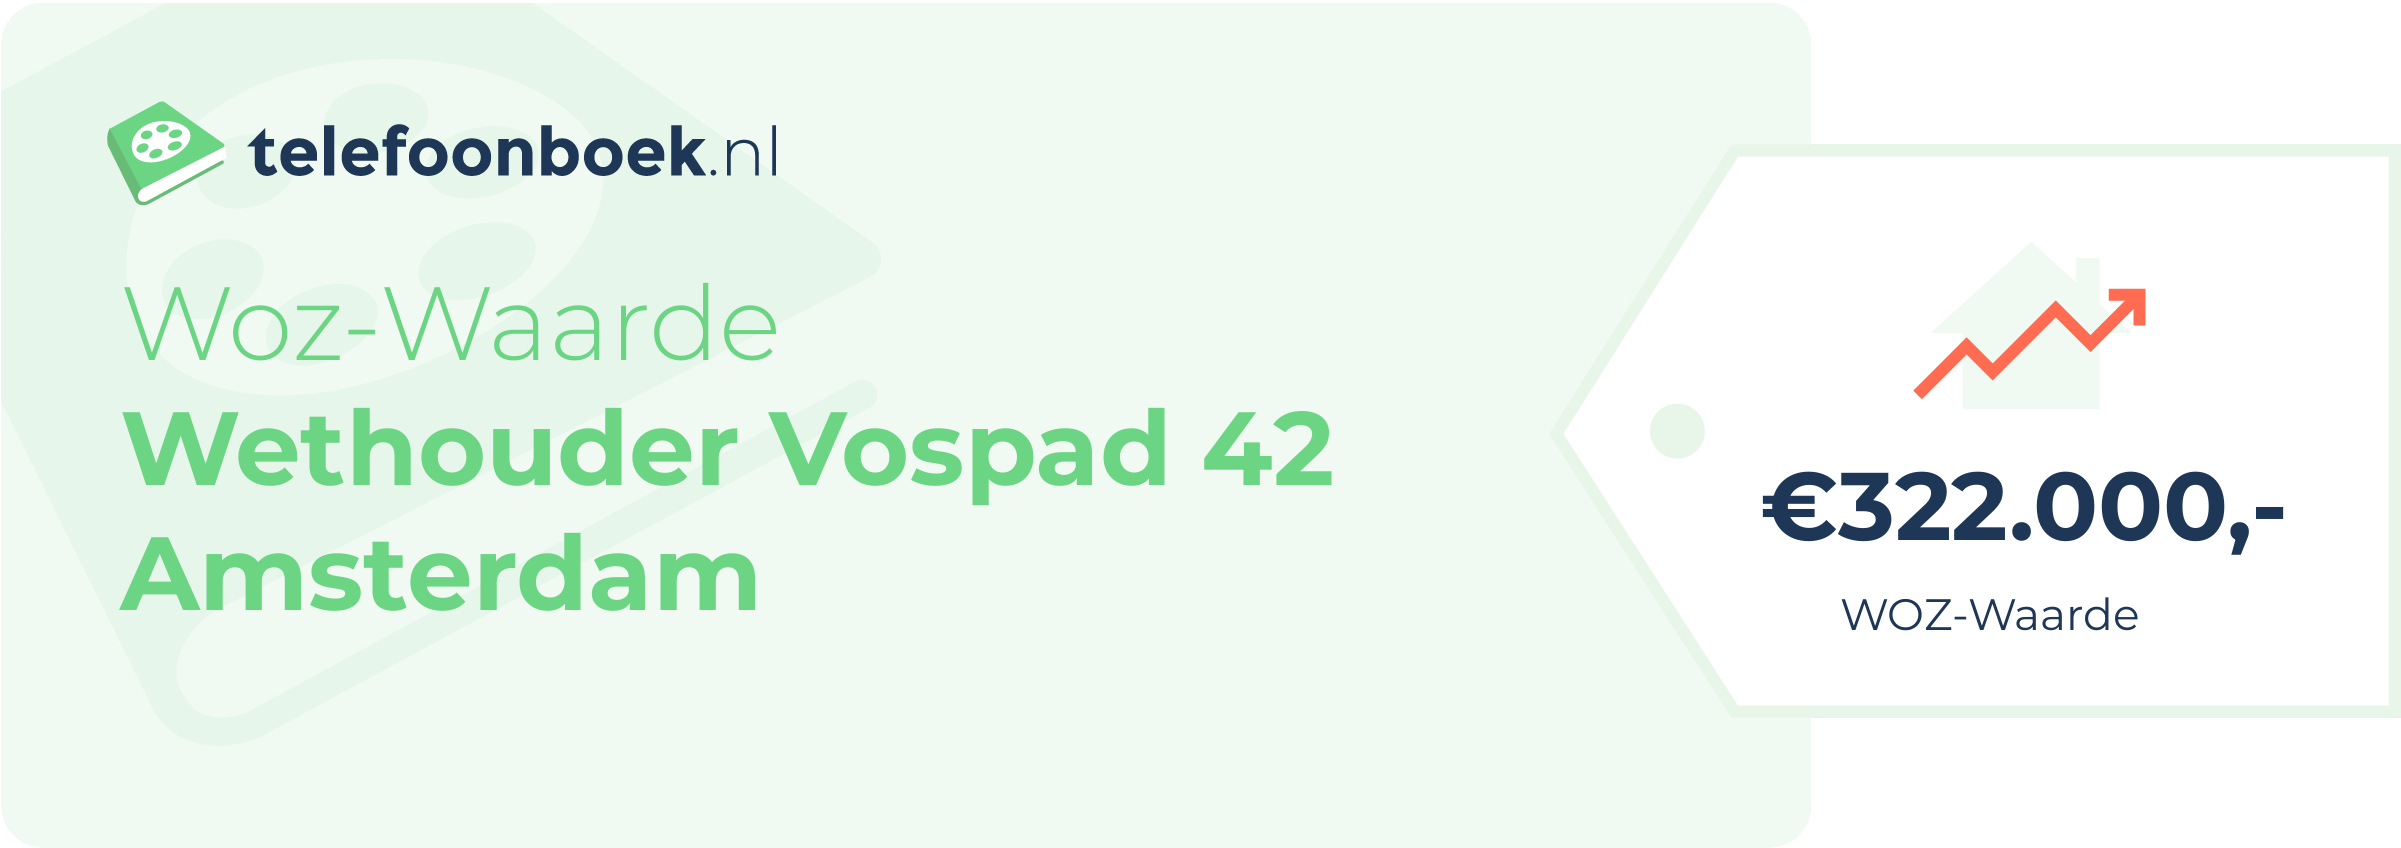 WOZ-waarde Wethouder Vospad 42 Amsterdam